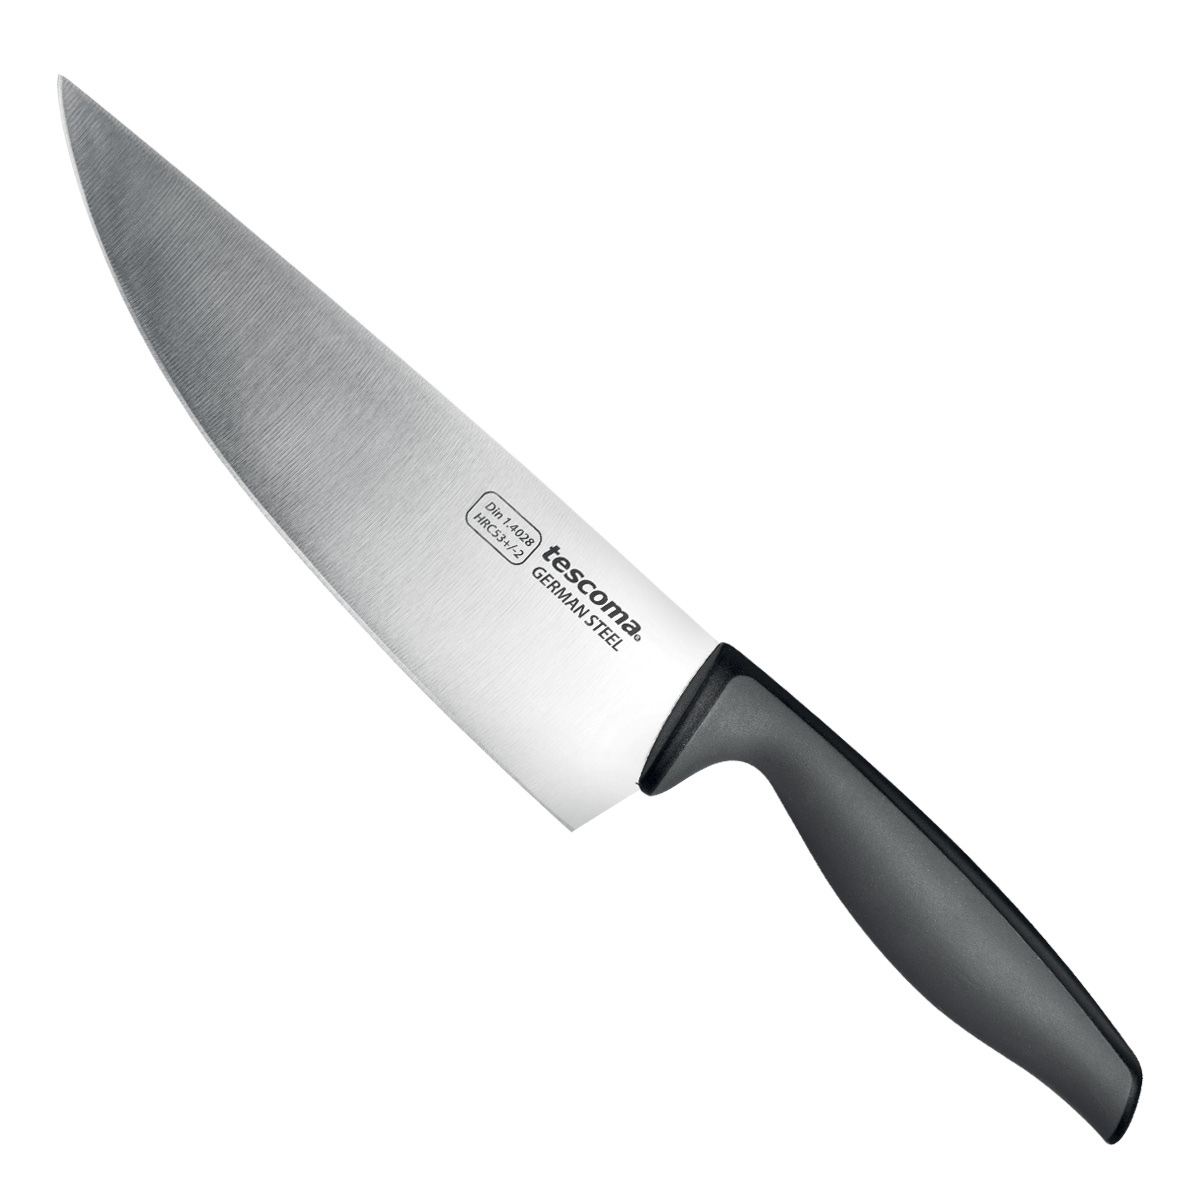 Nóż kuchenny PRECIOSO 18 cm